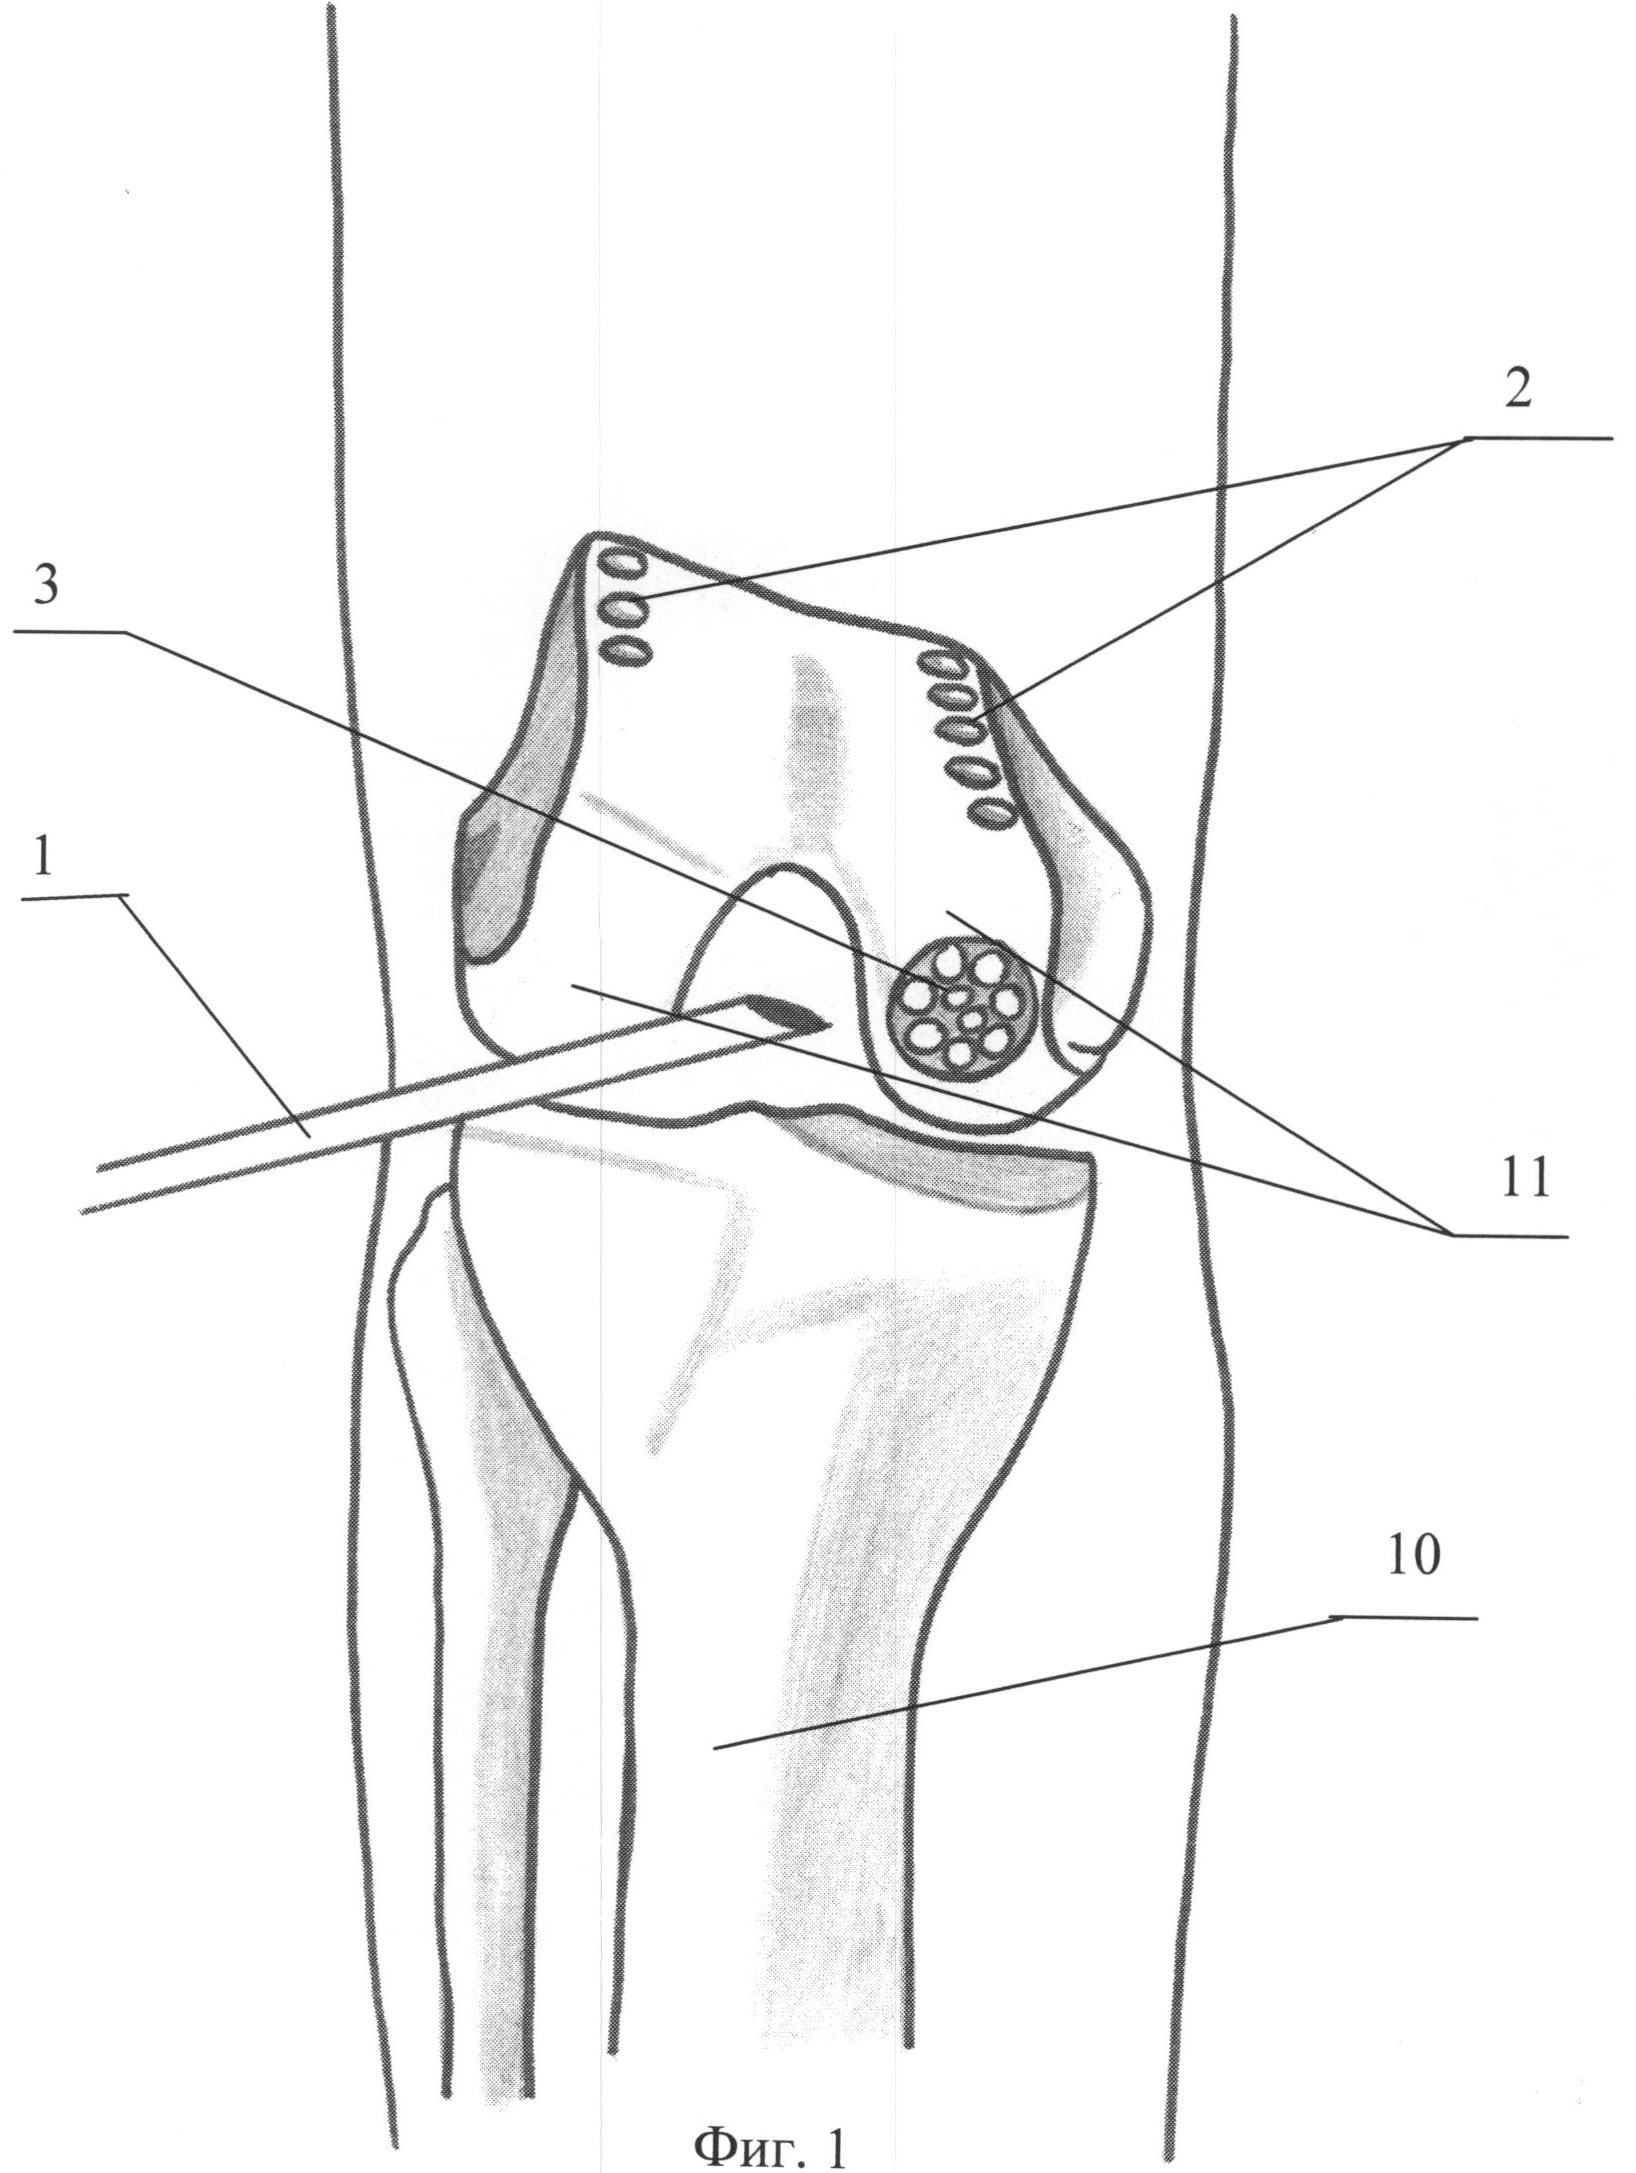 Внутренние мыщелки. Мыщелка большеберцовой кости. Мыщелок коленного сустава. Костная аутопластика тазобедренного сустава. Аутопластика ПКС коленного.